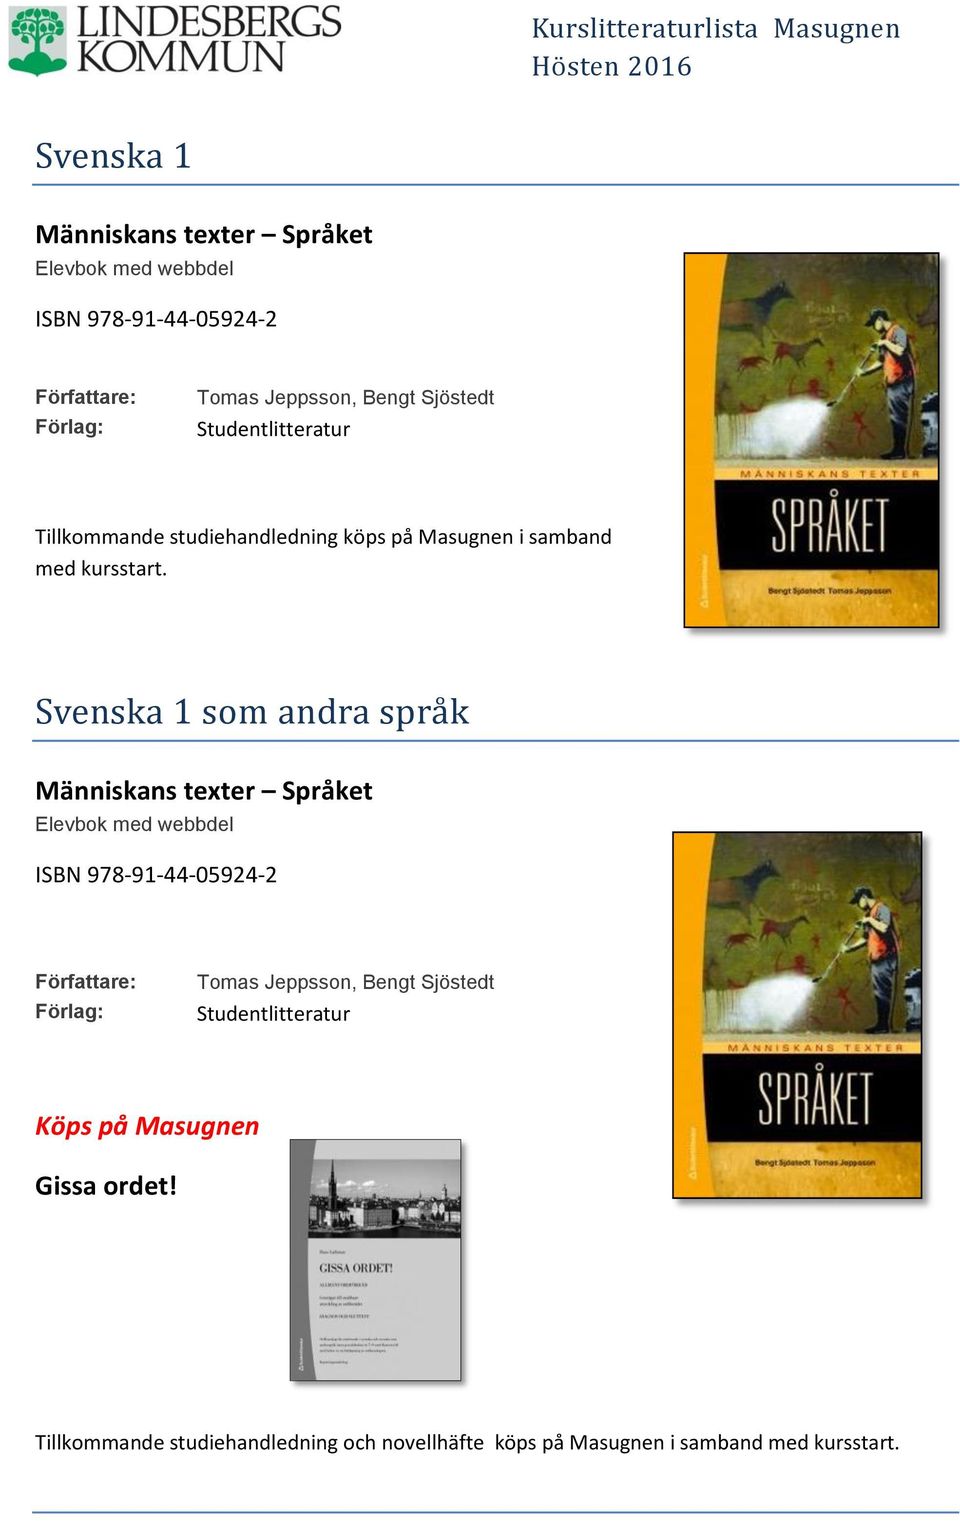 Svenska 1 söm andra spra k Människans texter Språket Elevbok med webbdel ISBN 978-91-44-05924-2 Tomas